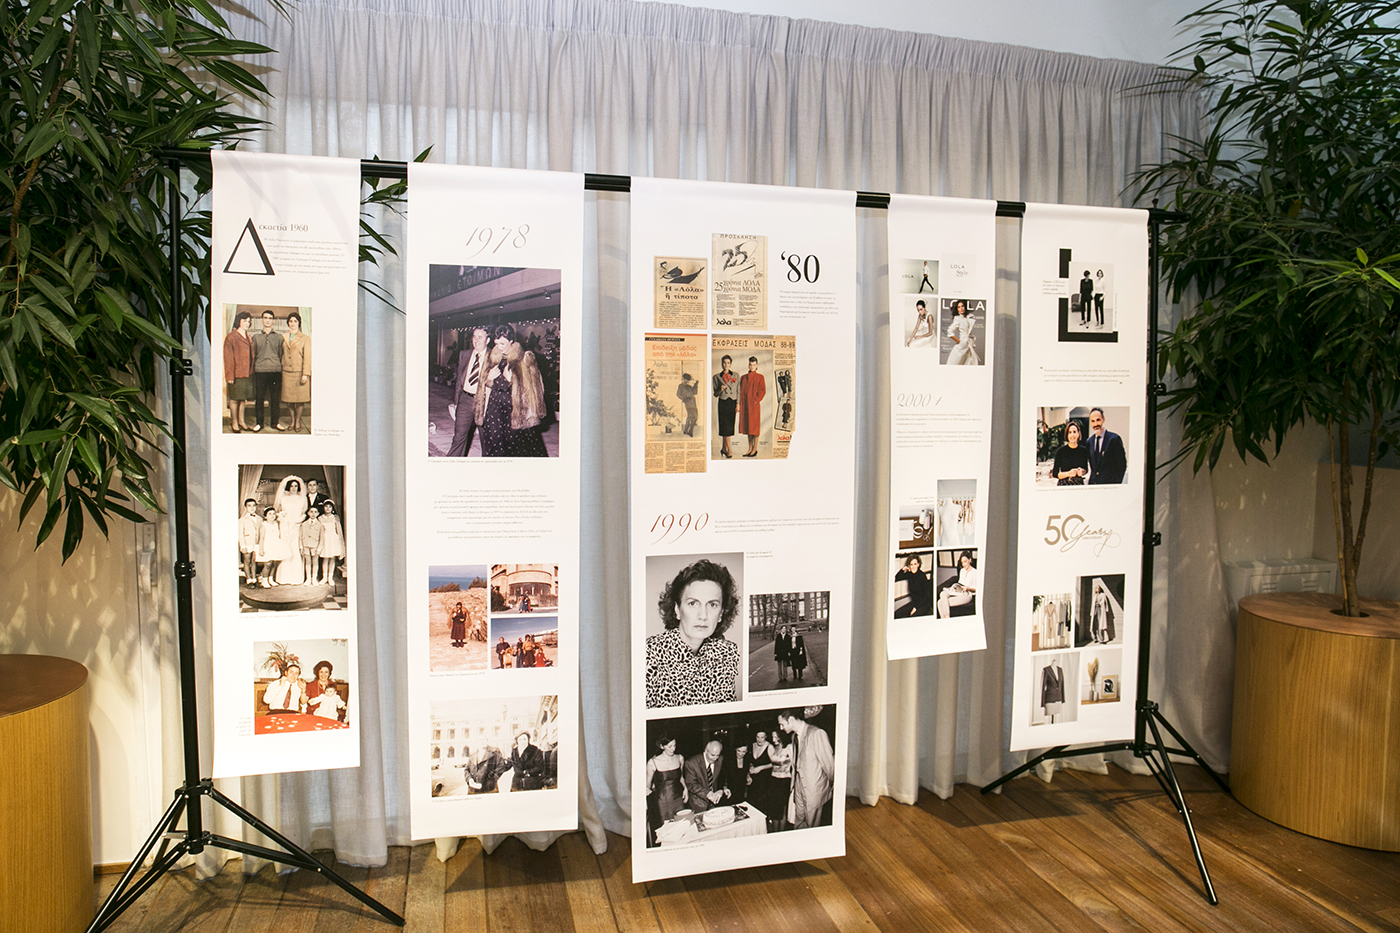 Η ελληνική εταιρεία LOLA γιορτάζει 50 χρόνια στη μόδα και αφηγείται την ιστορία της-3